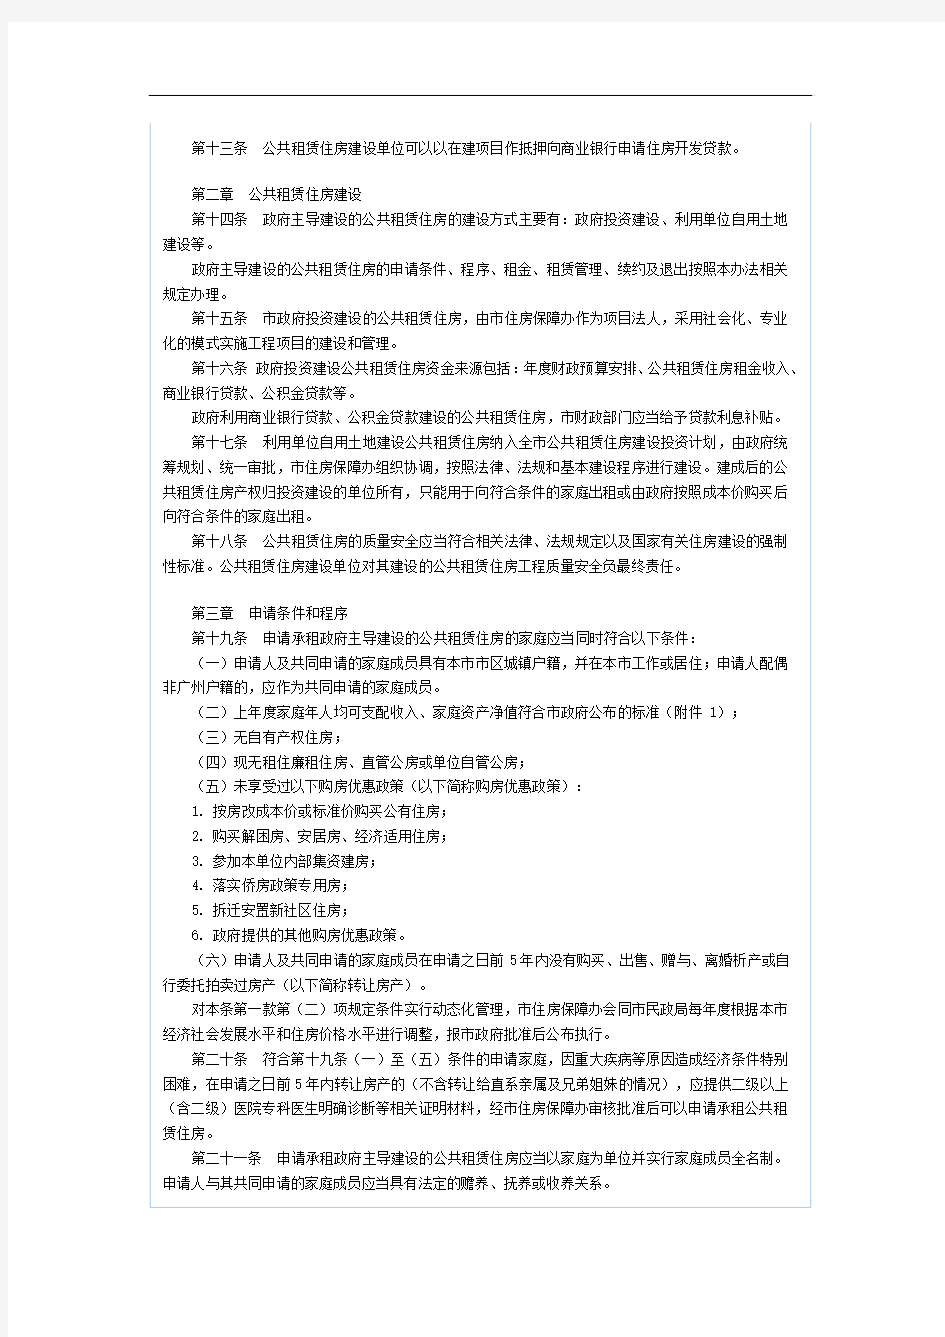 广州市公共租赁住房制度实施办法